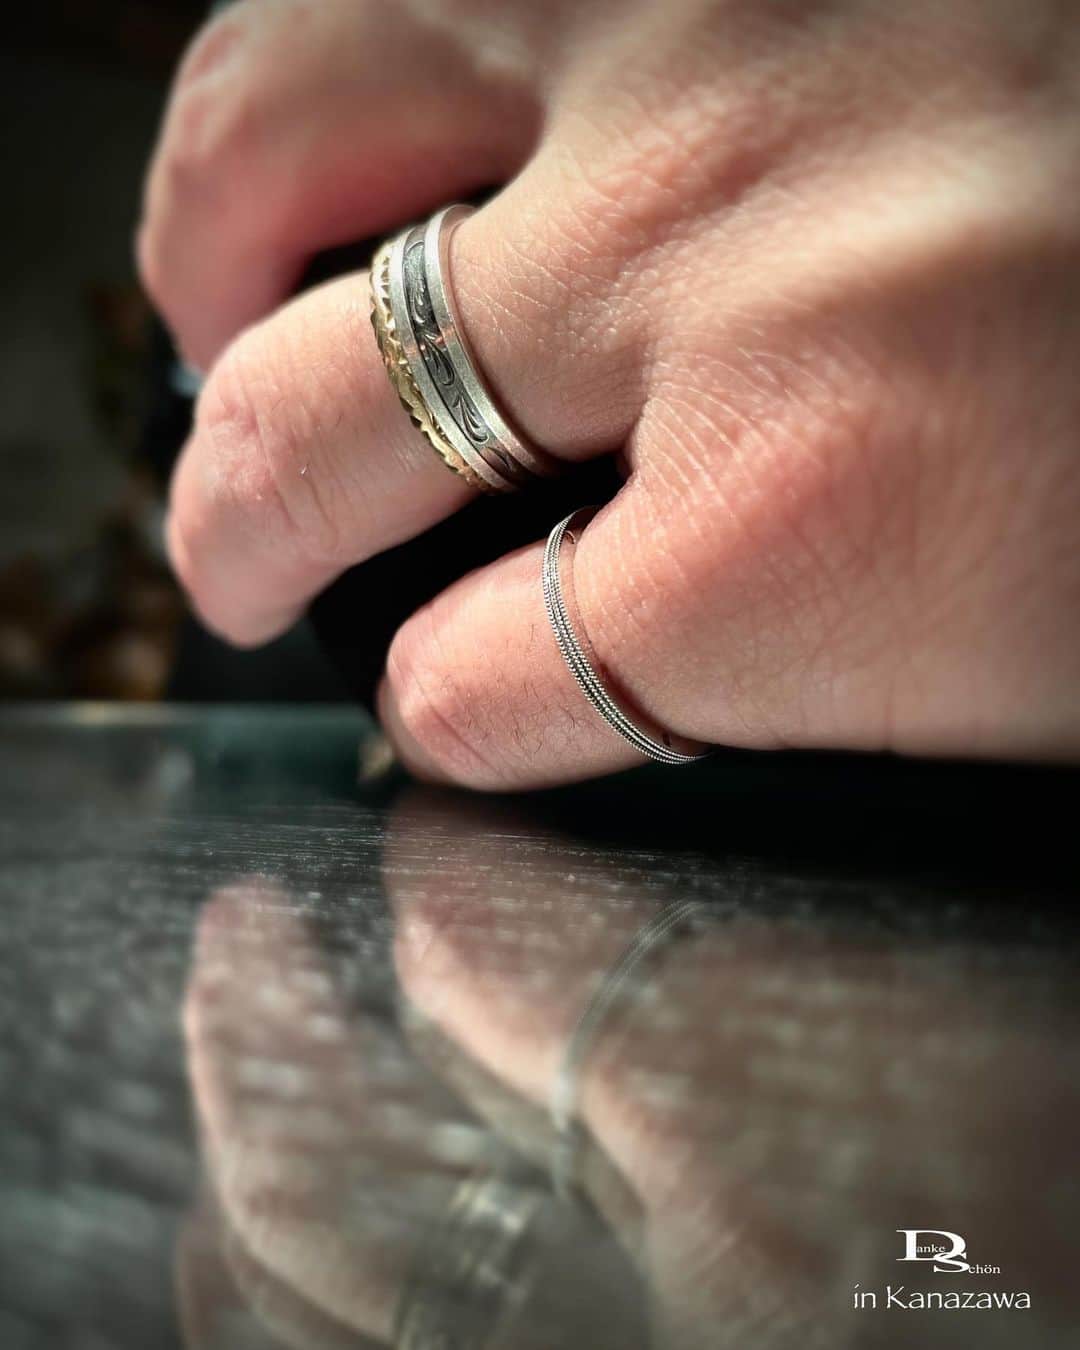 Danke schön ダンケ 金沢 結婚指輪 鍛造さんのインスタグラム写真 - (Danke schön ダンケ 金沢 結婚指輪 鍛造Instagram)「・ ・ ハイ🙌🏻 昨晩は太陽が沈んでからの ｢お引き渡しの儀」 ・ ・ やっぱりコレだけの猛暑が 続いていると妊婦さんは大変 ・ ・ 仕事終わり…て言うのも あるけど ・ ・ おおおっ！ ・ ・ 想像以上にお腹が 一段と大きくなっててびっくり！ ・ ・ そうなんです！Baby Ringの ｢お引き渡しの儀」だったんです。 ・ ・ しかも今回のBaby Ringは お初尽くしなのです。 ・ ・ ▪︎出産前に作りたい🙌🏻から始まり ・ ・ ▪︎身につけるのは旦那君の方 ・ ・ それは奥様は 10月10日（とつきとおか）一緒に過ごし母となる自覚や覚悟を決められるけど旦那さんは生まれた瞬間ハイ🙌🏻あなたの子です…と言われても…。ならば🙌🏻出産前にこのBaby Ringを身につけて父になる実感を味わいながら誕生の日を一緒に迎えたい…と言う奥様の思いから始まったこのドラマ ・ ・ ▪︎しかも 旦那君はピンキーRing ・ ・ ▪︎しかも あのスライスシリーズの平打ちミルを 男性が身につけるのはお初 ・ ・ ▪︎で更に スライスシリーズの特徴の一つでもある カラーDiaを3石全部色を変えて側面に🙌🏻 Dankeの看板娘みたいに入れたい🙌🏻と言ってくれた御夫妻 ・ ・ 思う存分楽しんで いや〜御商談中めちゃくちゃ 一緒に楽しませてもらいました。 ・ ・ 誕生予定は12月 まだまだお腹大きくなるね〜。 ・ ・ 次に再会するのは 親になった二人かな？…。もう1回会えるかな？ ・ ・ どんな子が生まれて御対面が出来るのか 今から楽しみで仕方がない店主 ・ ・ 実は1番最初の御来店のきっかけは ペアリングを探していてが… 初めましてだったん御夫婦です。 ・ ・ 彼氏・彼女の時に出会い 夫婦となった二人と再会出来て 今度は親となり家族での御来店を 見届けさせてもらえるこの仕事は やっぱり最高だし ・ ・ こんな風なお付き合いをさせて 頂けるのはやっぱり‼︎ ・ ・ クリスチャンバウアーと言う ｢生涯共に…の指輪」を取り扱う事が 出来ているからこそだと ・ ・ 二人を見ていて改めて感じたし この経験出来るのはお客様もそうだけど店だって バウアーを取り扱っている醍醐味はこれだと思う。 ・ ・ 母子共に無事の 出産を祈るばかりです🙏 ・ ・ ・ ・ ・  【鍛造削り出し】 🇩🇪クリスチャンバウアー 専門店🇩🇪  ワンランク上をいくノウハウの クリスチャンバウアーの選び方なら 『Danke schön 』  ——Danke————————————— ▪︎Instagramプロフィール 🔜 @danke2005 ———————————schön————  #クリスチャンバウアー金沢 #金沢結婚指輪 #結婚指輪 #婚約指輪 #鍛造指輪 #結婚記念日 #結婚10周年 #鍛造リング #ポルシェ #メルセデスベンツ #岐阜 #ポリッシュ #結婚指輪金沢  #結婚20周年 #富山結婚指輪 #指輪選び #指輪重ね付け #結婚15周年 #ブライダルリング #経年変化 #ベビーリング #地金屋鍛造 #私のバウアー  #サムシングフォー #サムシングブルー #プッシュギフト #クリスチャンバウアーダンケ ------------------------------------------ 鍛造削り出し 🇩🇪クリスチャンバウアー 専門店 『  Danke schön 』  • 営業時間 am11:00〜pm9:00 • 定休日 : 木曜日 • 駐車場 : 店舗前OK • ご予約 : 優先  ——Danke————————————— ▪︎トップページ 🔜 @danke2005 ———————————schön————」8月30日 19時22分 - danke2005